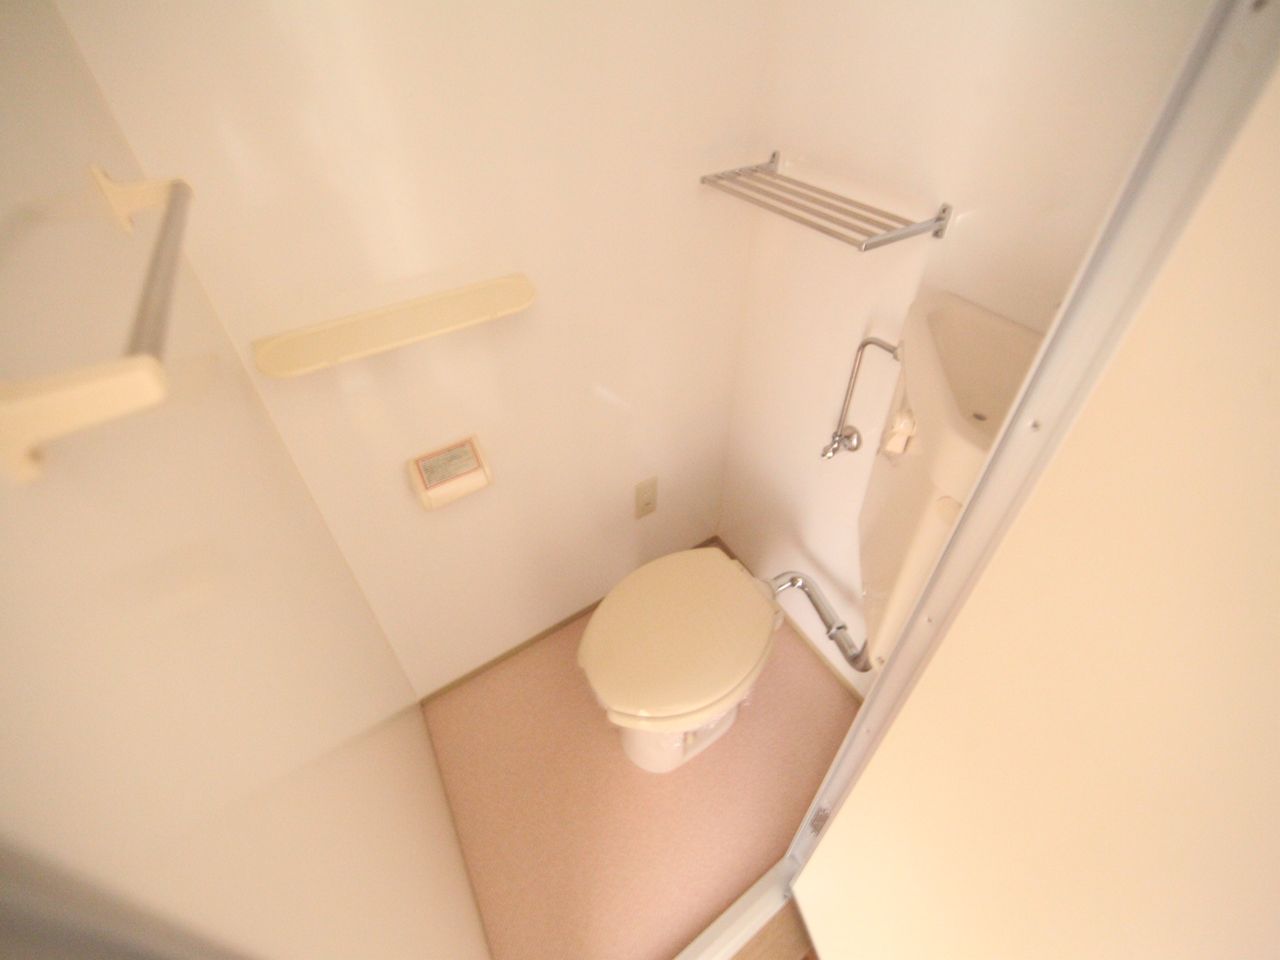 Toilet. Toilet (bath separate toilet) warm water washing toilet seat mounting Allowed